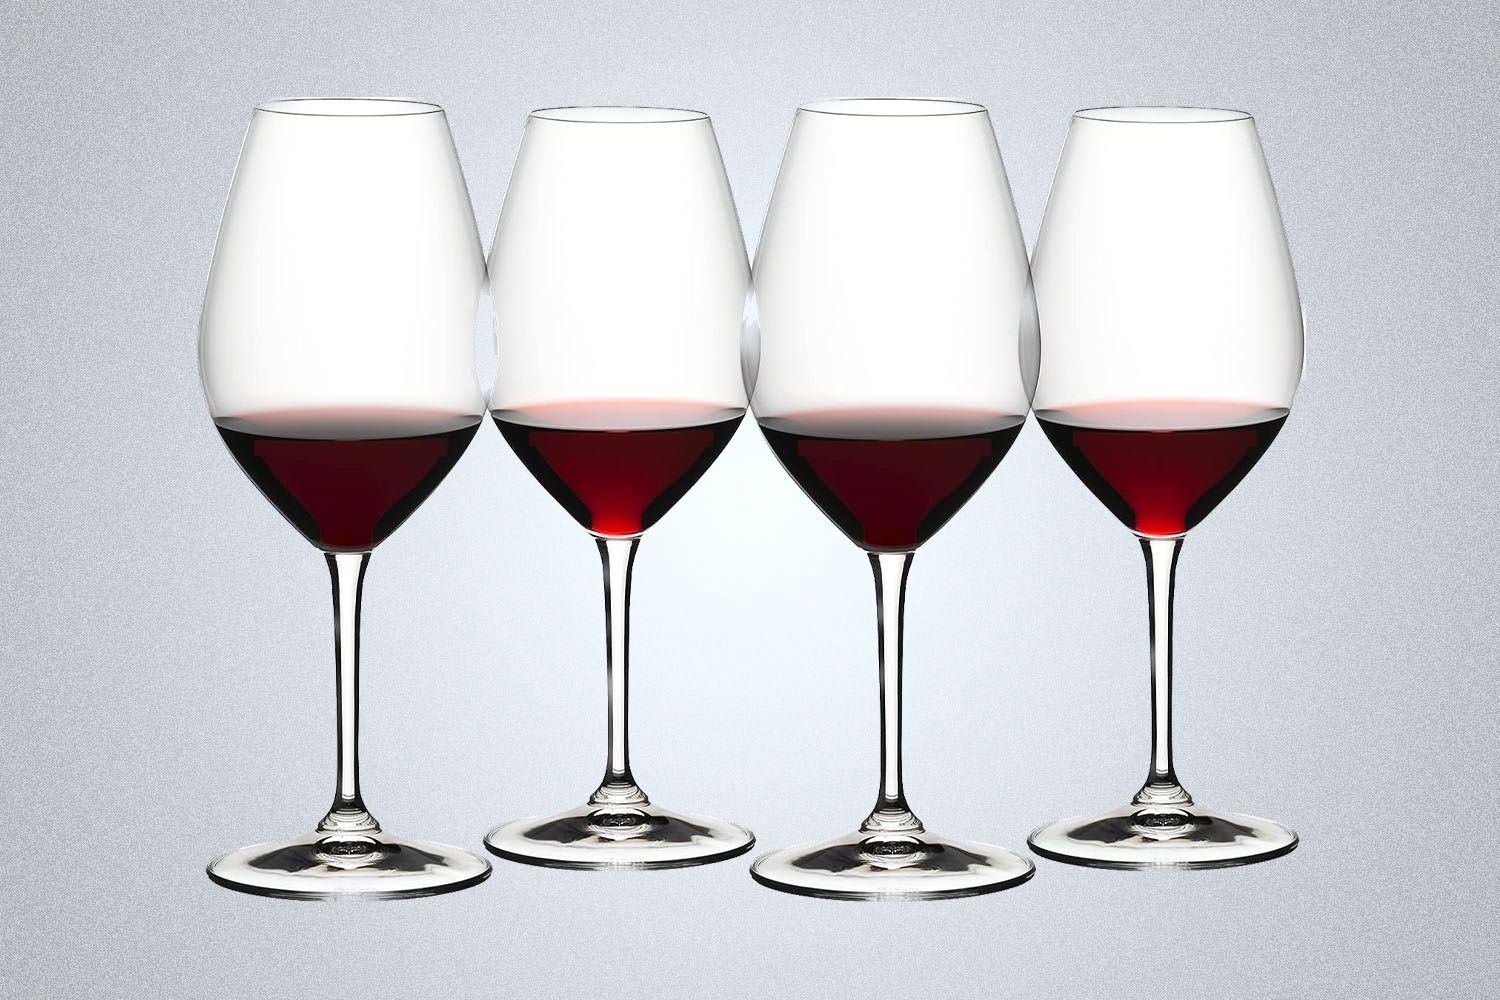 https://www.insidehook.com/wp-content/uploads/2023/09/Riedel-Wine-Friendly-Red-Wine.jpg?fit=1200%2C800